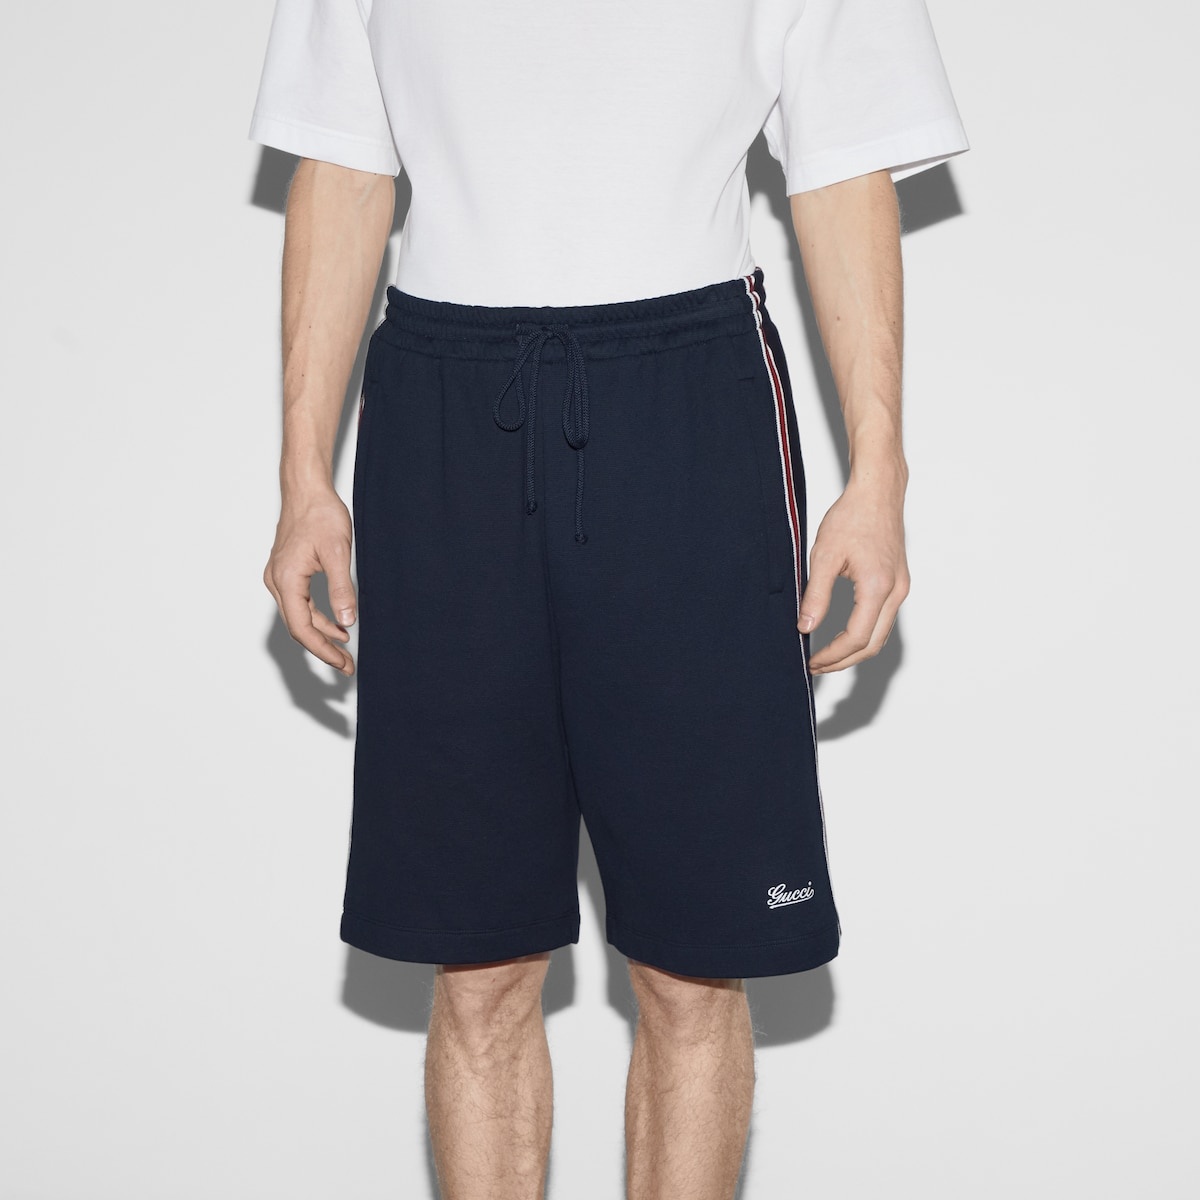 Cotton jersey basketball shorts - 3